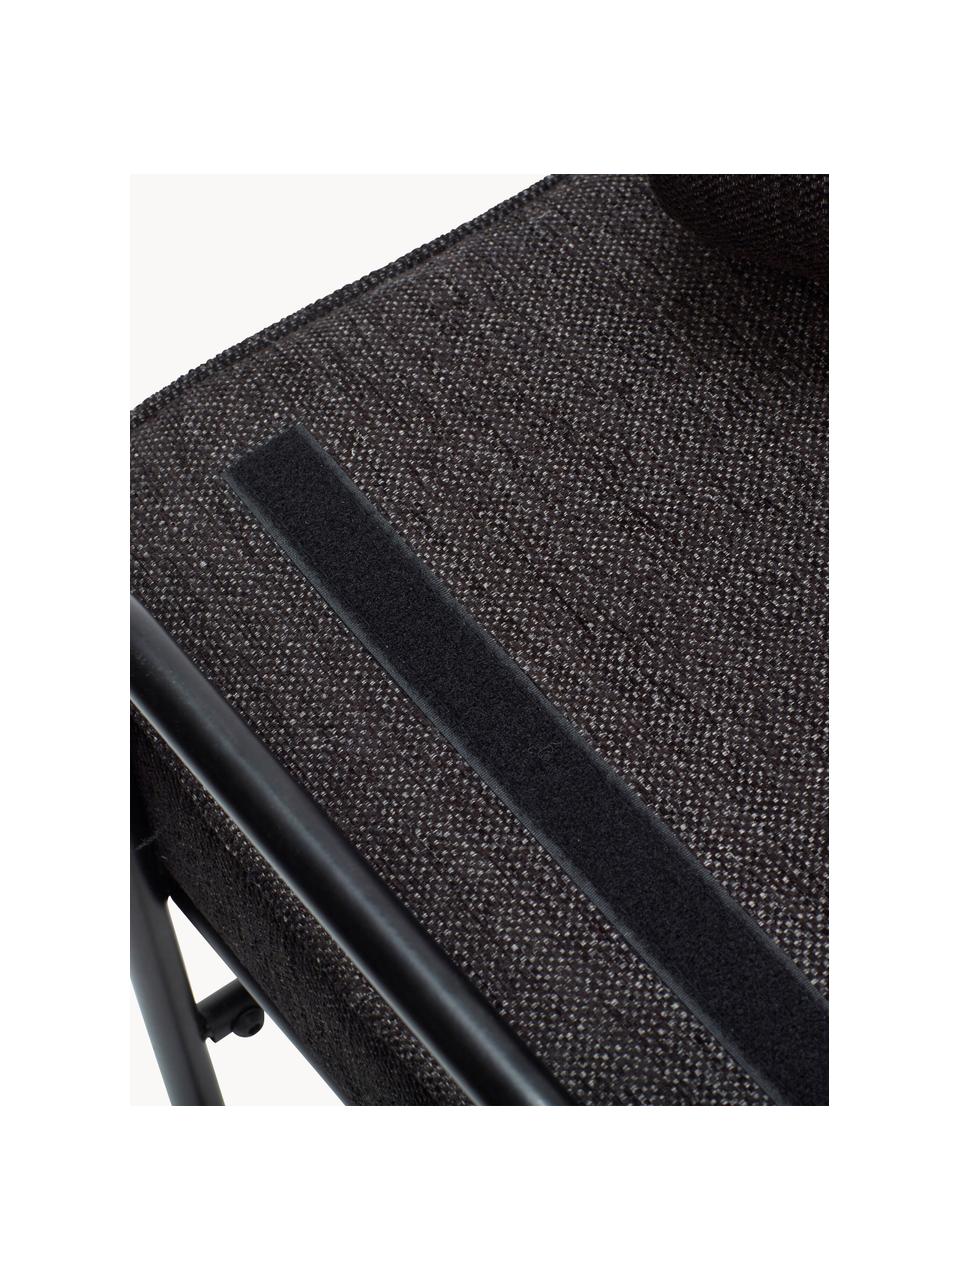 Banc avec assise rembourrée Pipe, Tissu brun foncé, noir, larg. 106 x prof. 47 cm